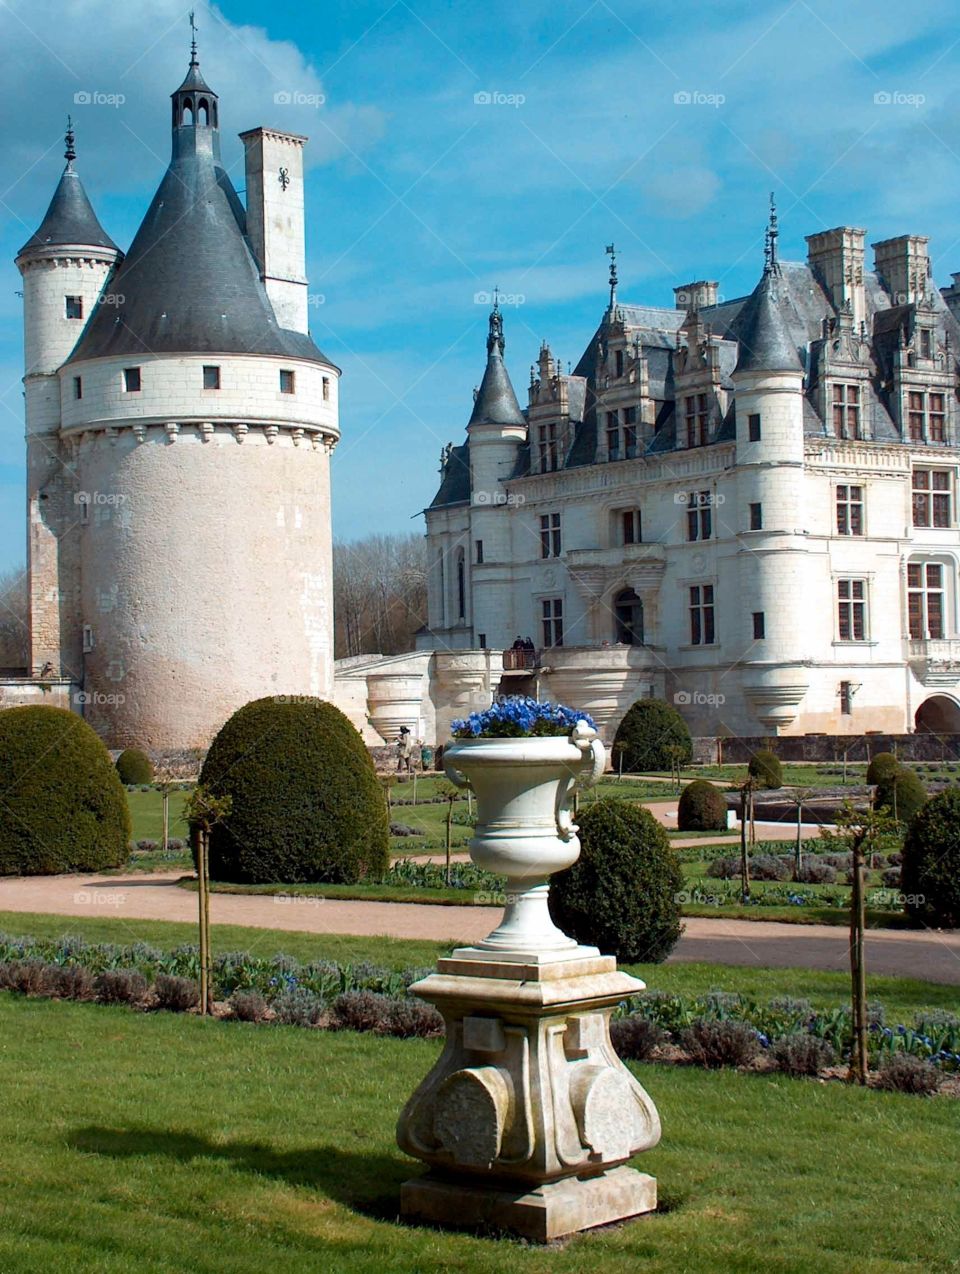 Chateau de Chenonceau. Chateau de Chenonceau in the Loire Valley, France